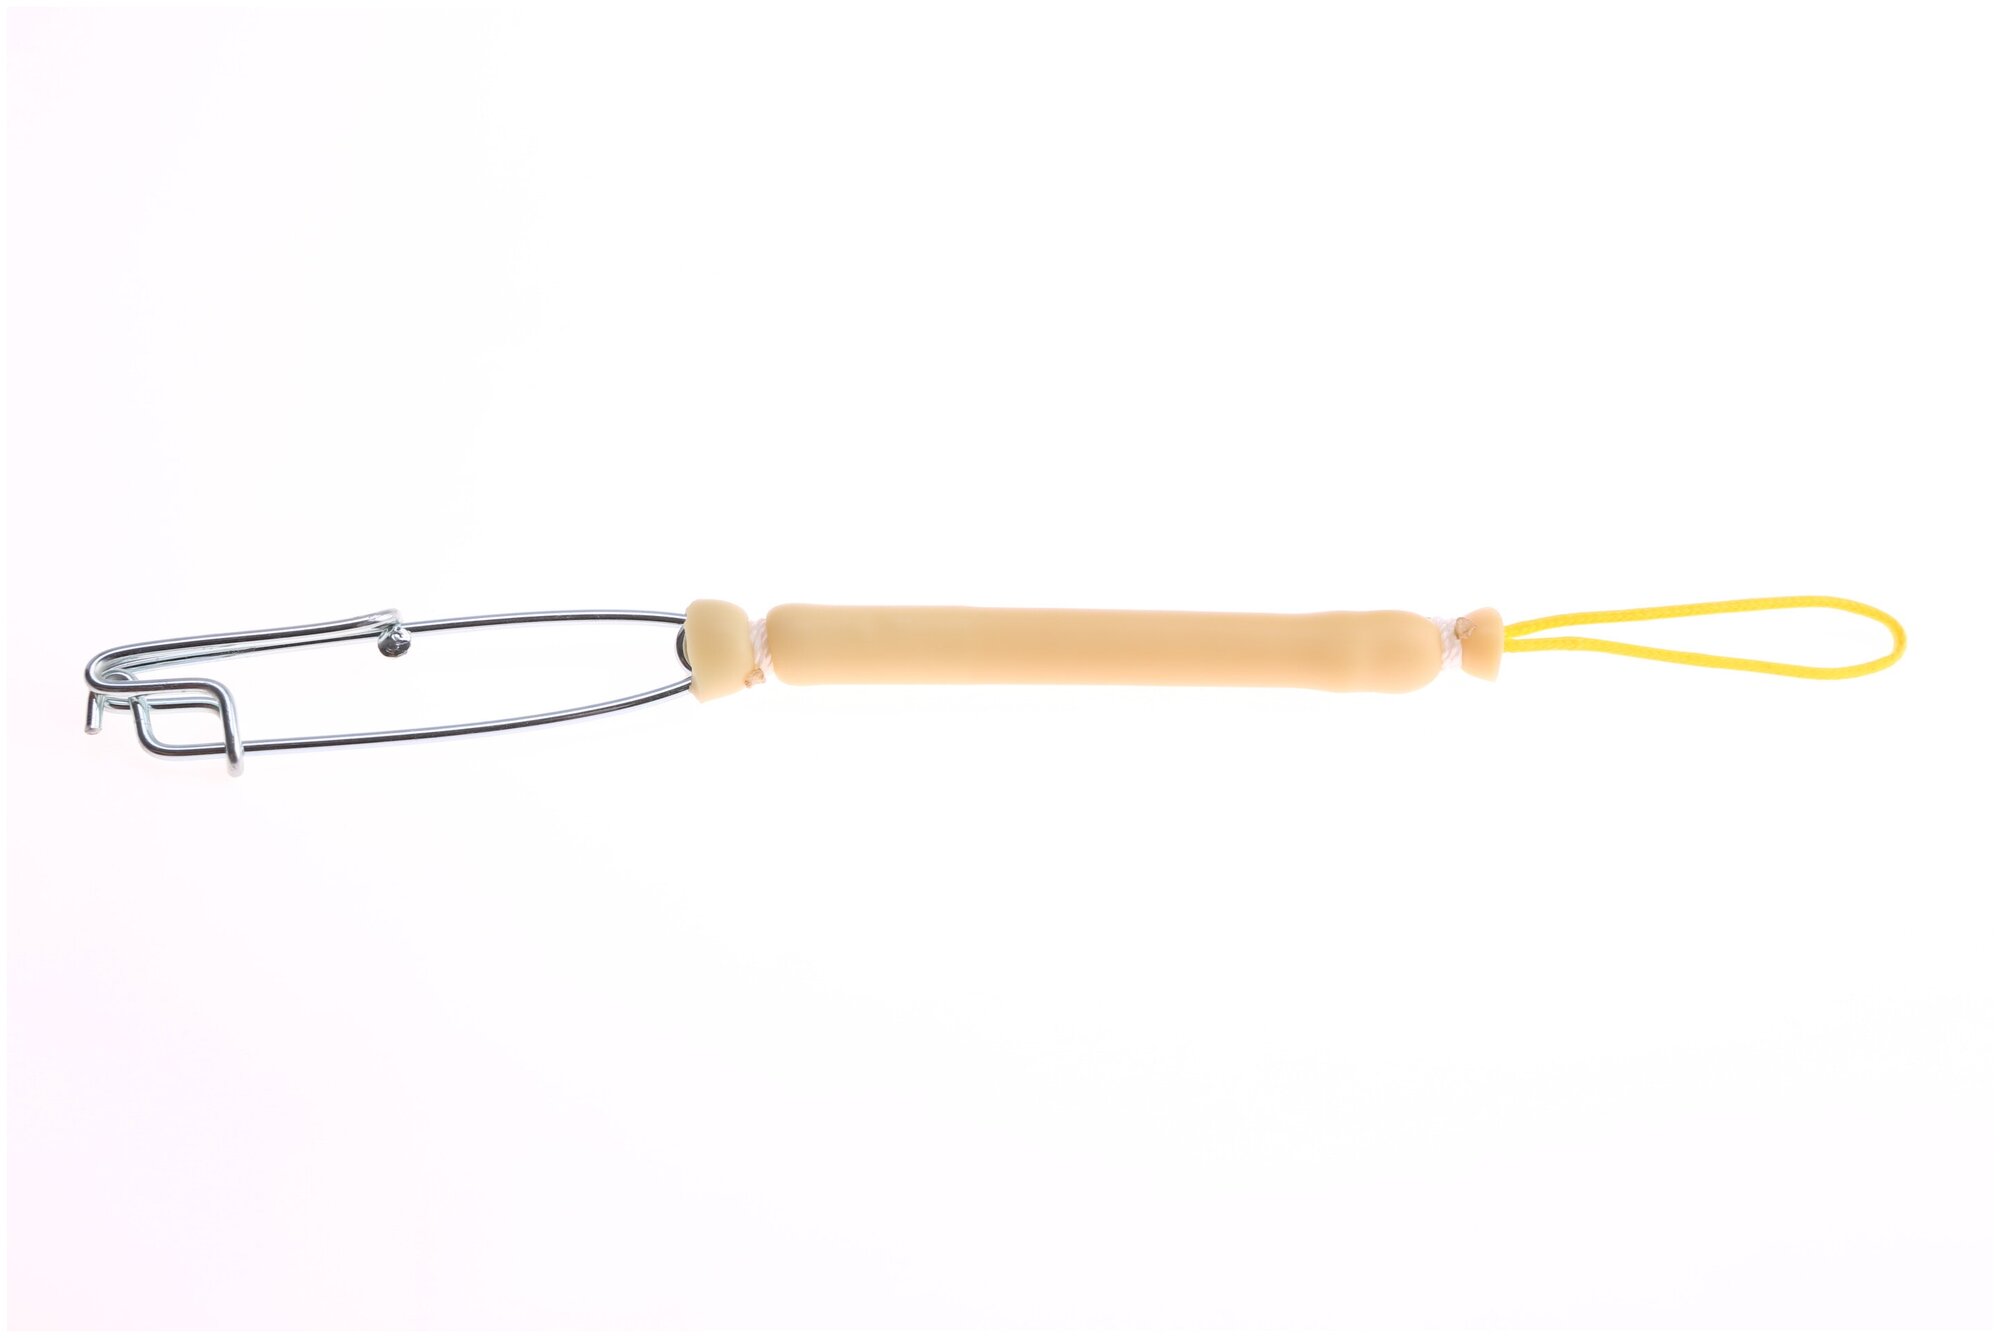 Амортизатор линя для подводного ружье или арбалета для подводной охоты, с карабином, длина 13 см, желтый. Narwhal